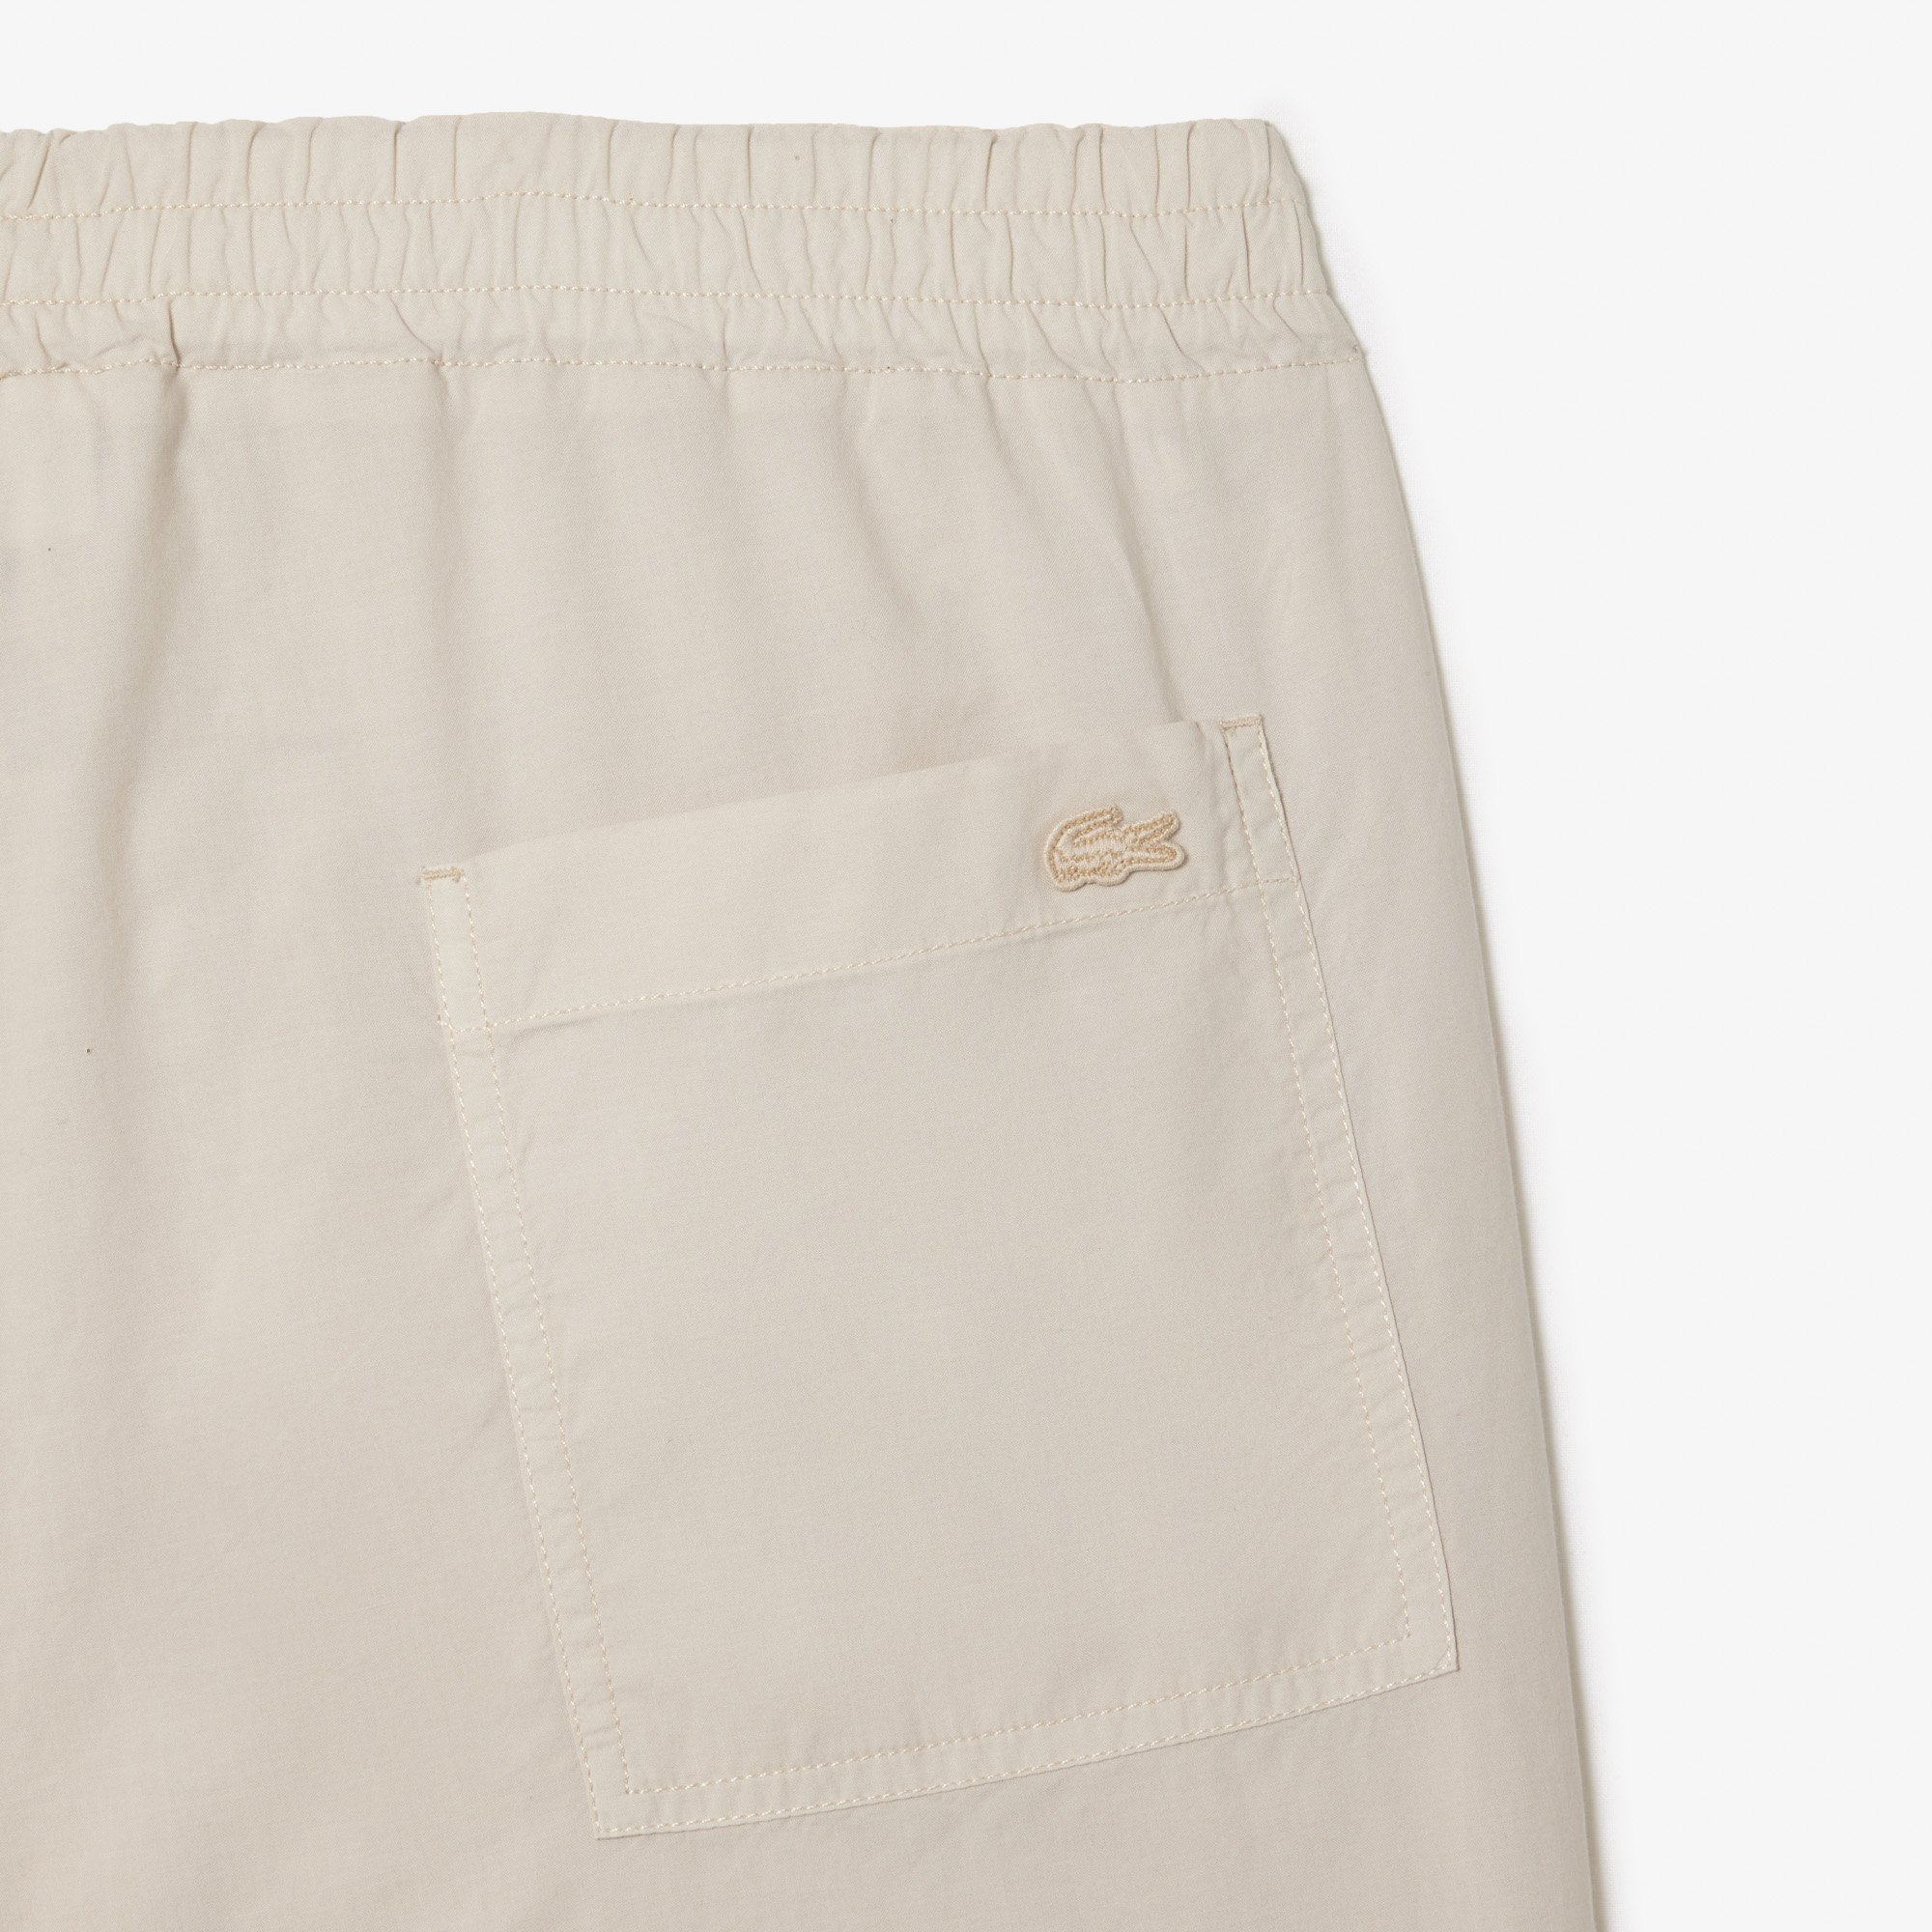 Men's Lacoste Organic Cotton Shorts